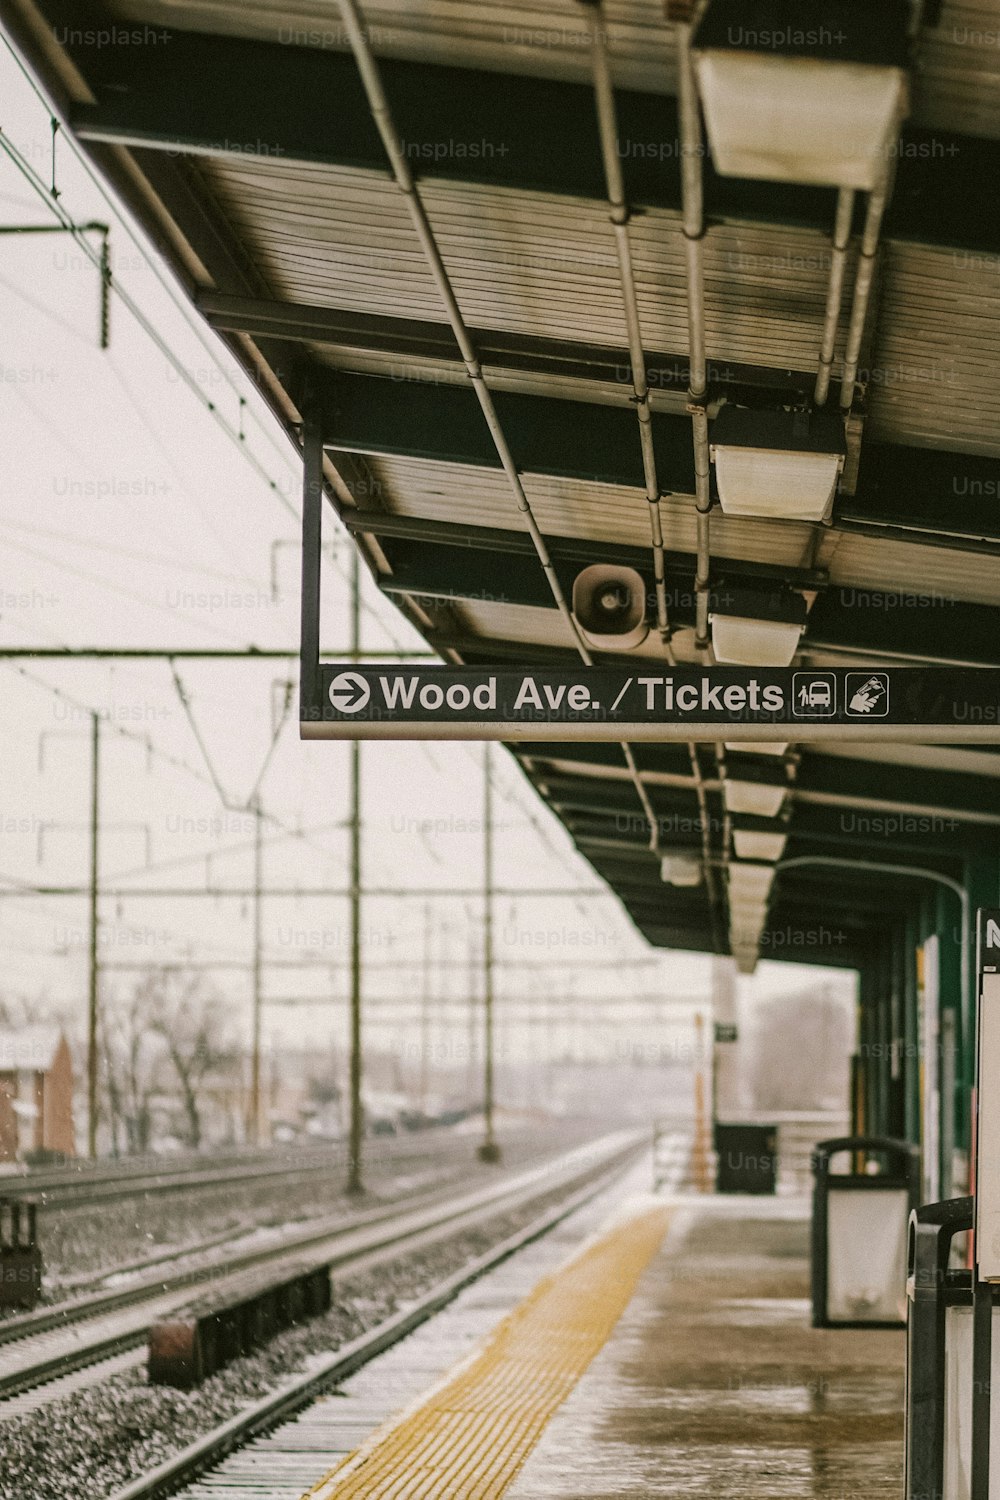 Une gare avec un panneau indiquant Wood Ave